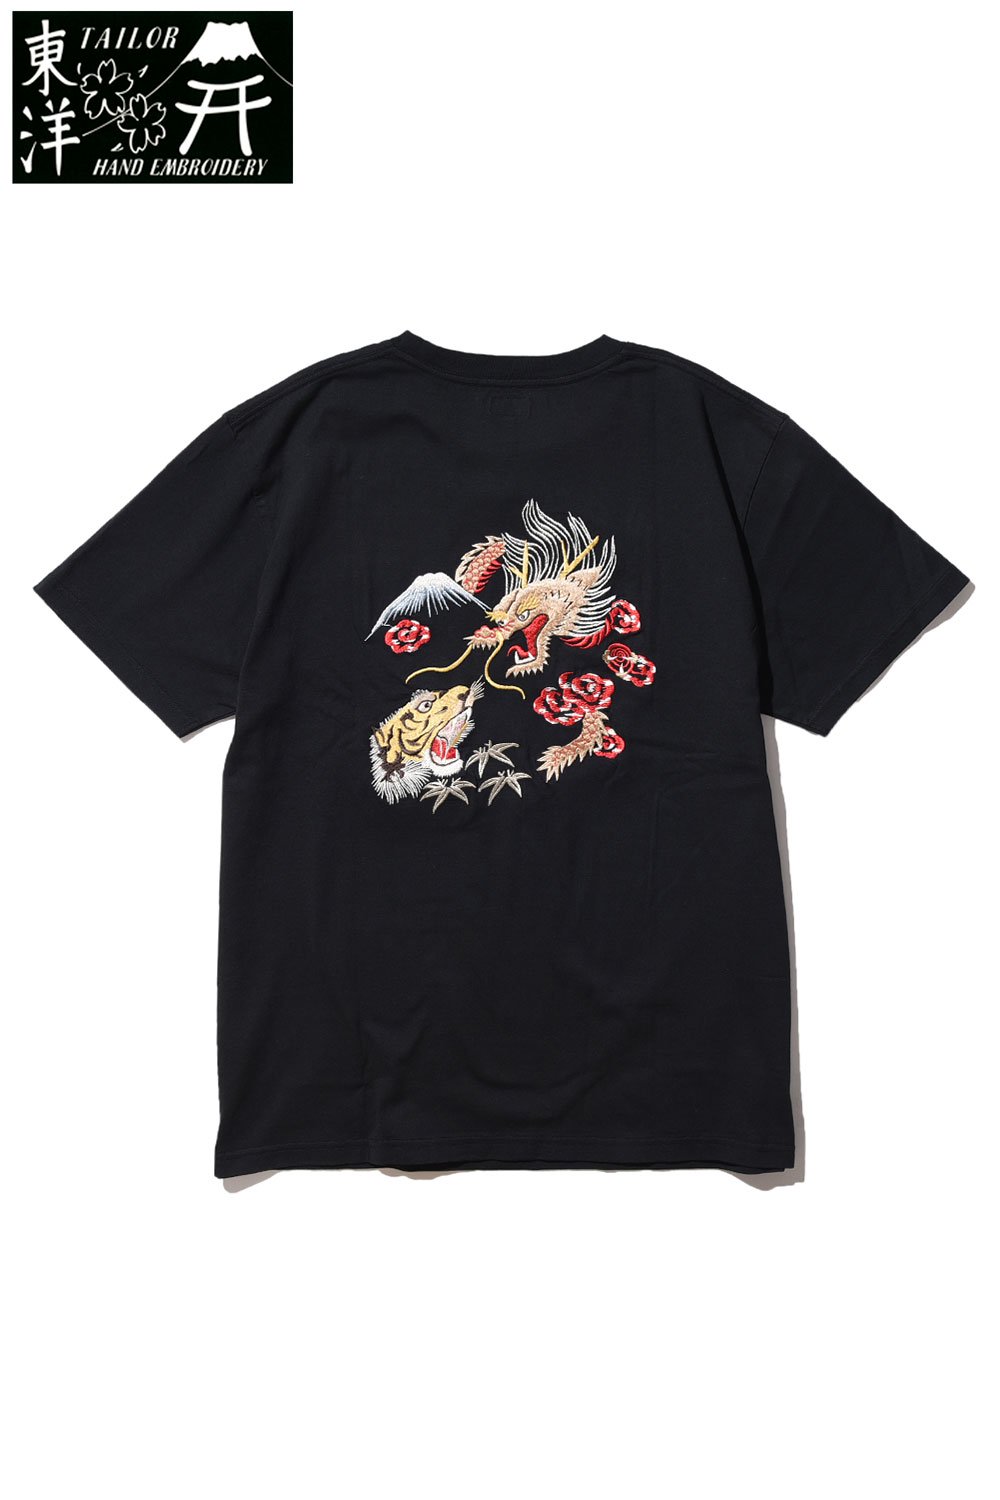 テーラー東洋 Tシャツ S/S SUKA T-SHIRTS 